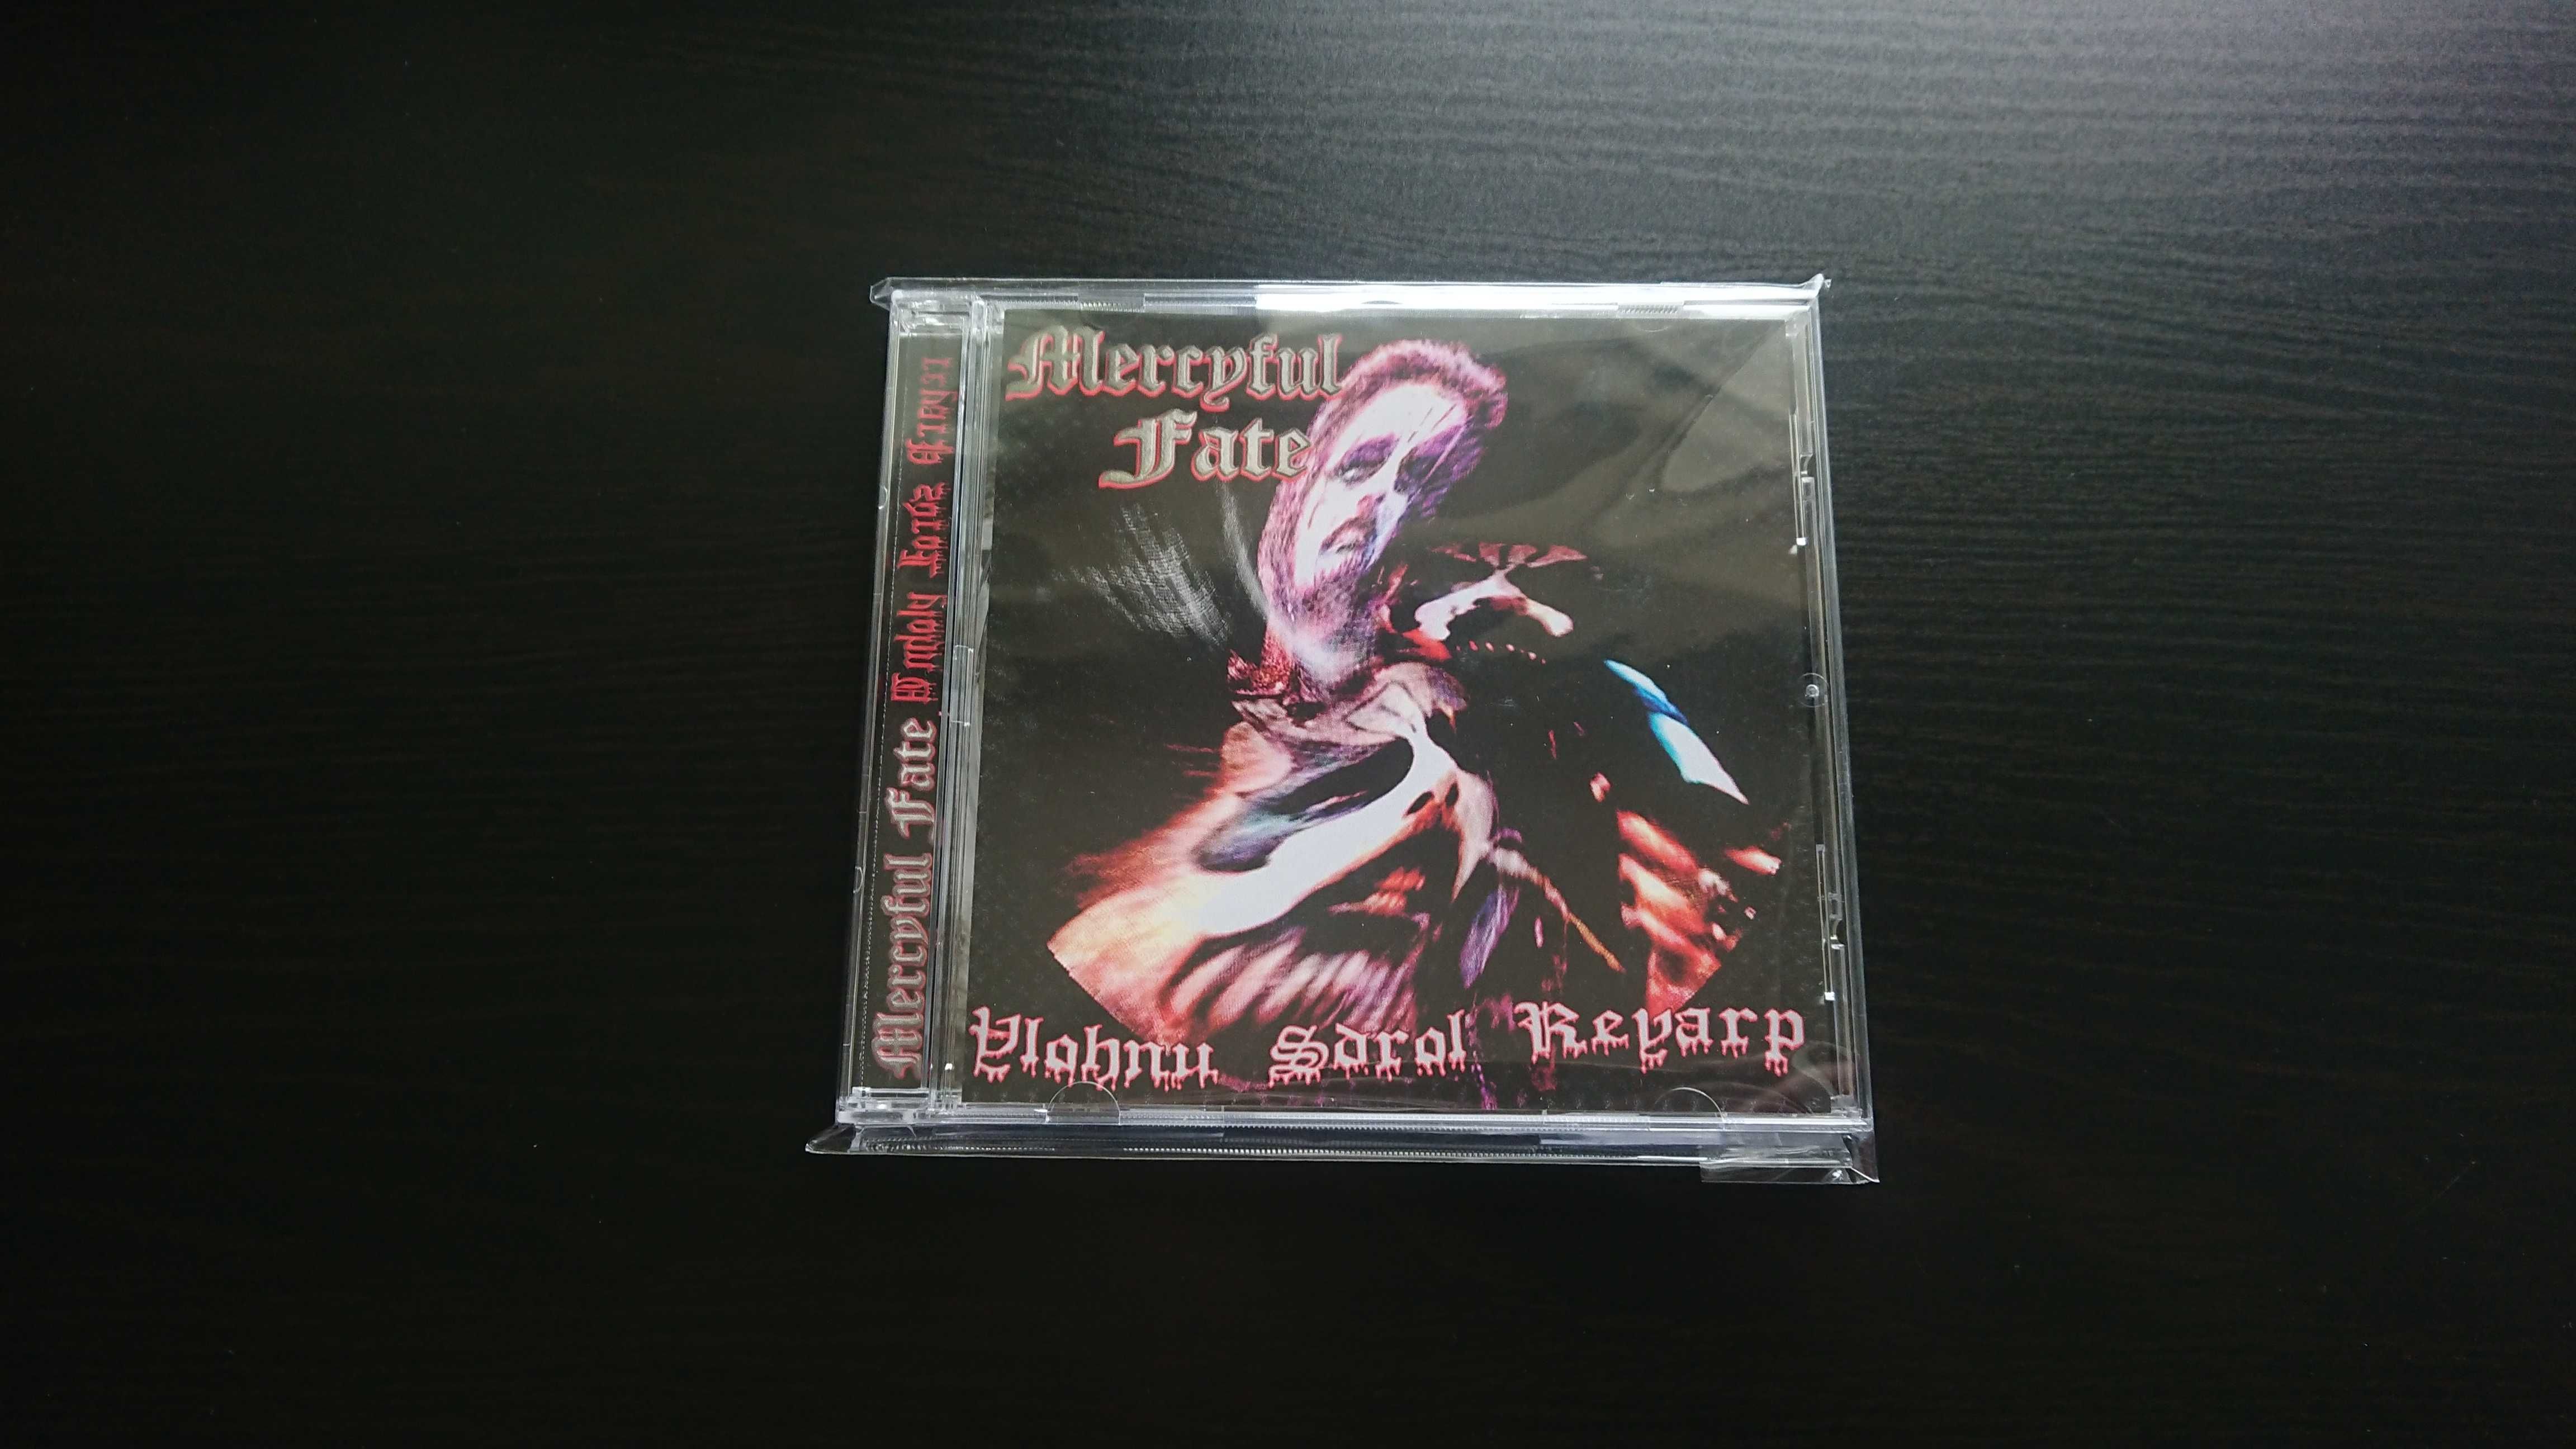 Mercyful Fate Ylohnu Sdrol Reyarp CD *NOWA* Limit To 300 Copies 2020